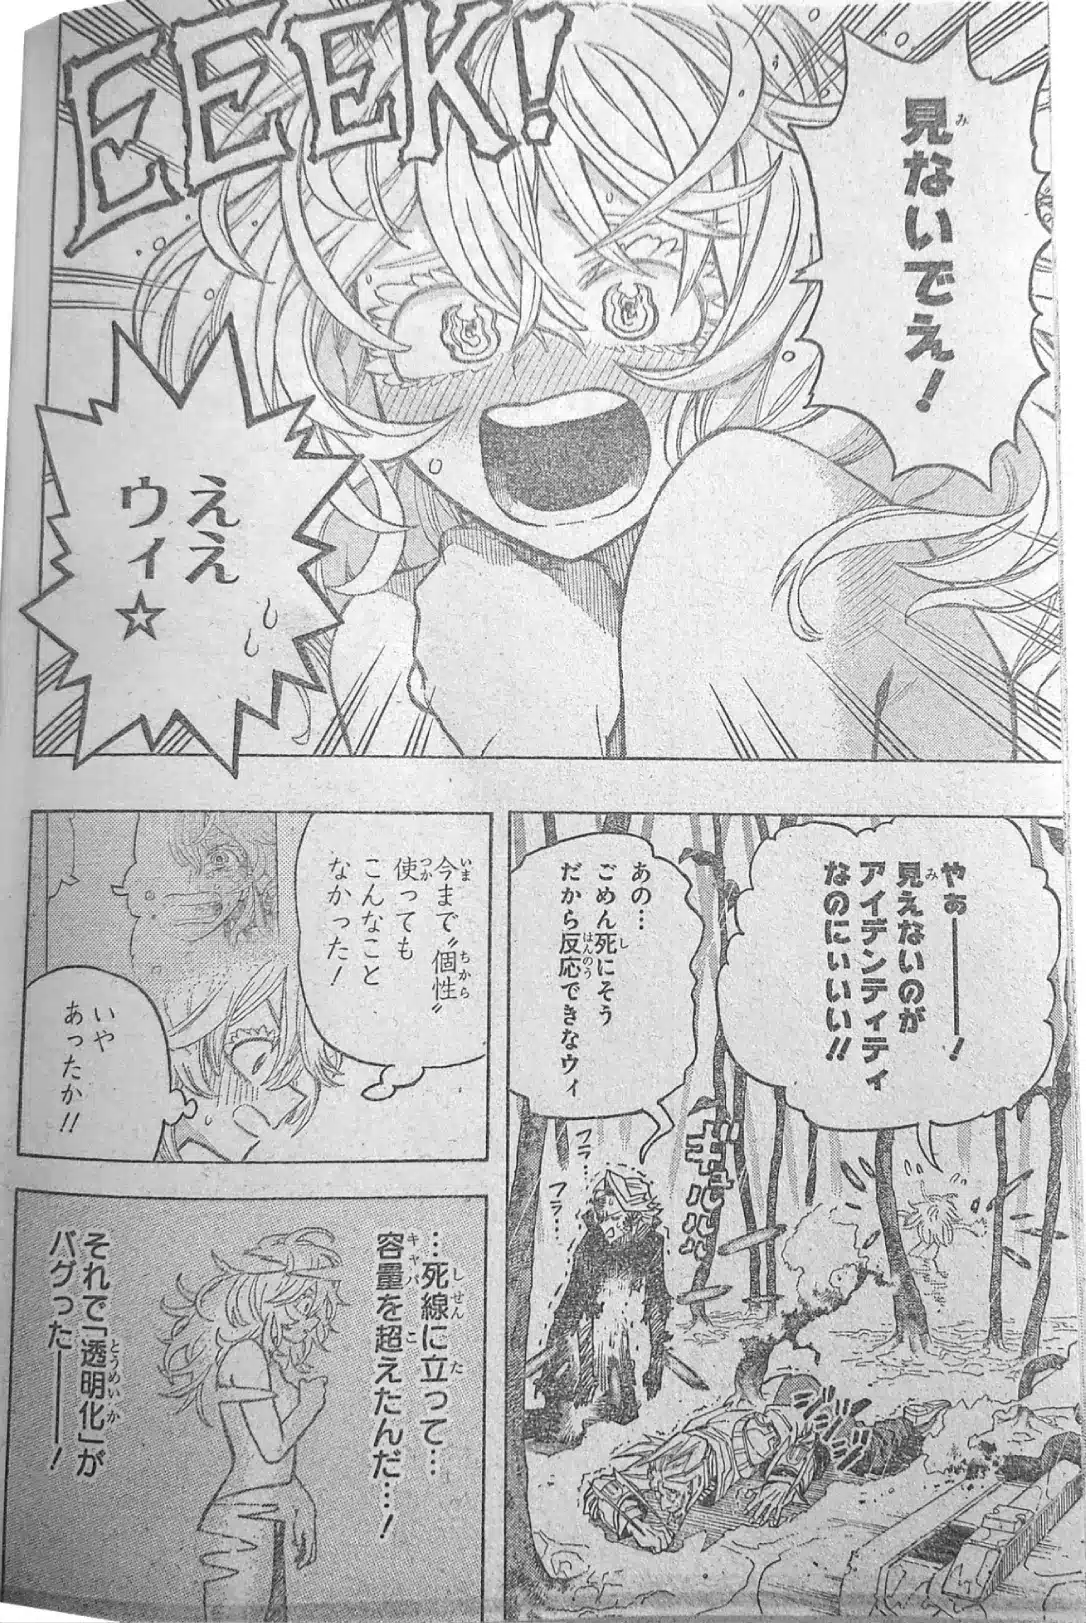 Boku No Hero Academia Manga Cap 400 1